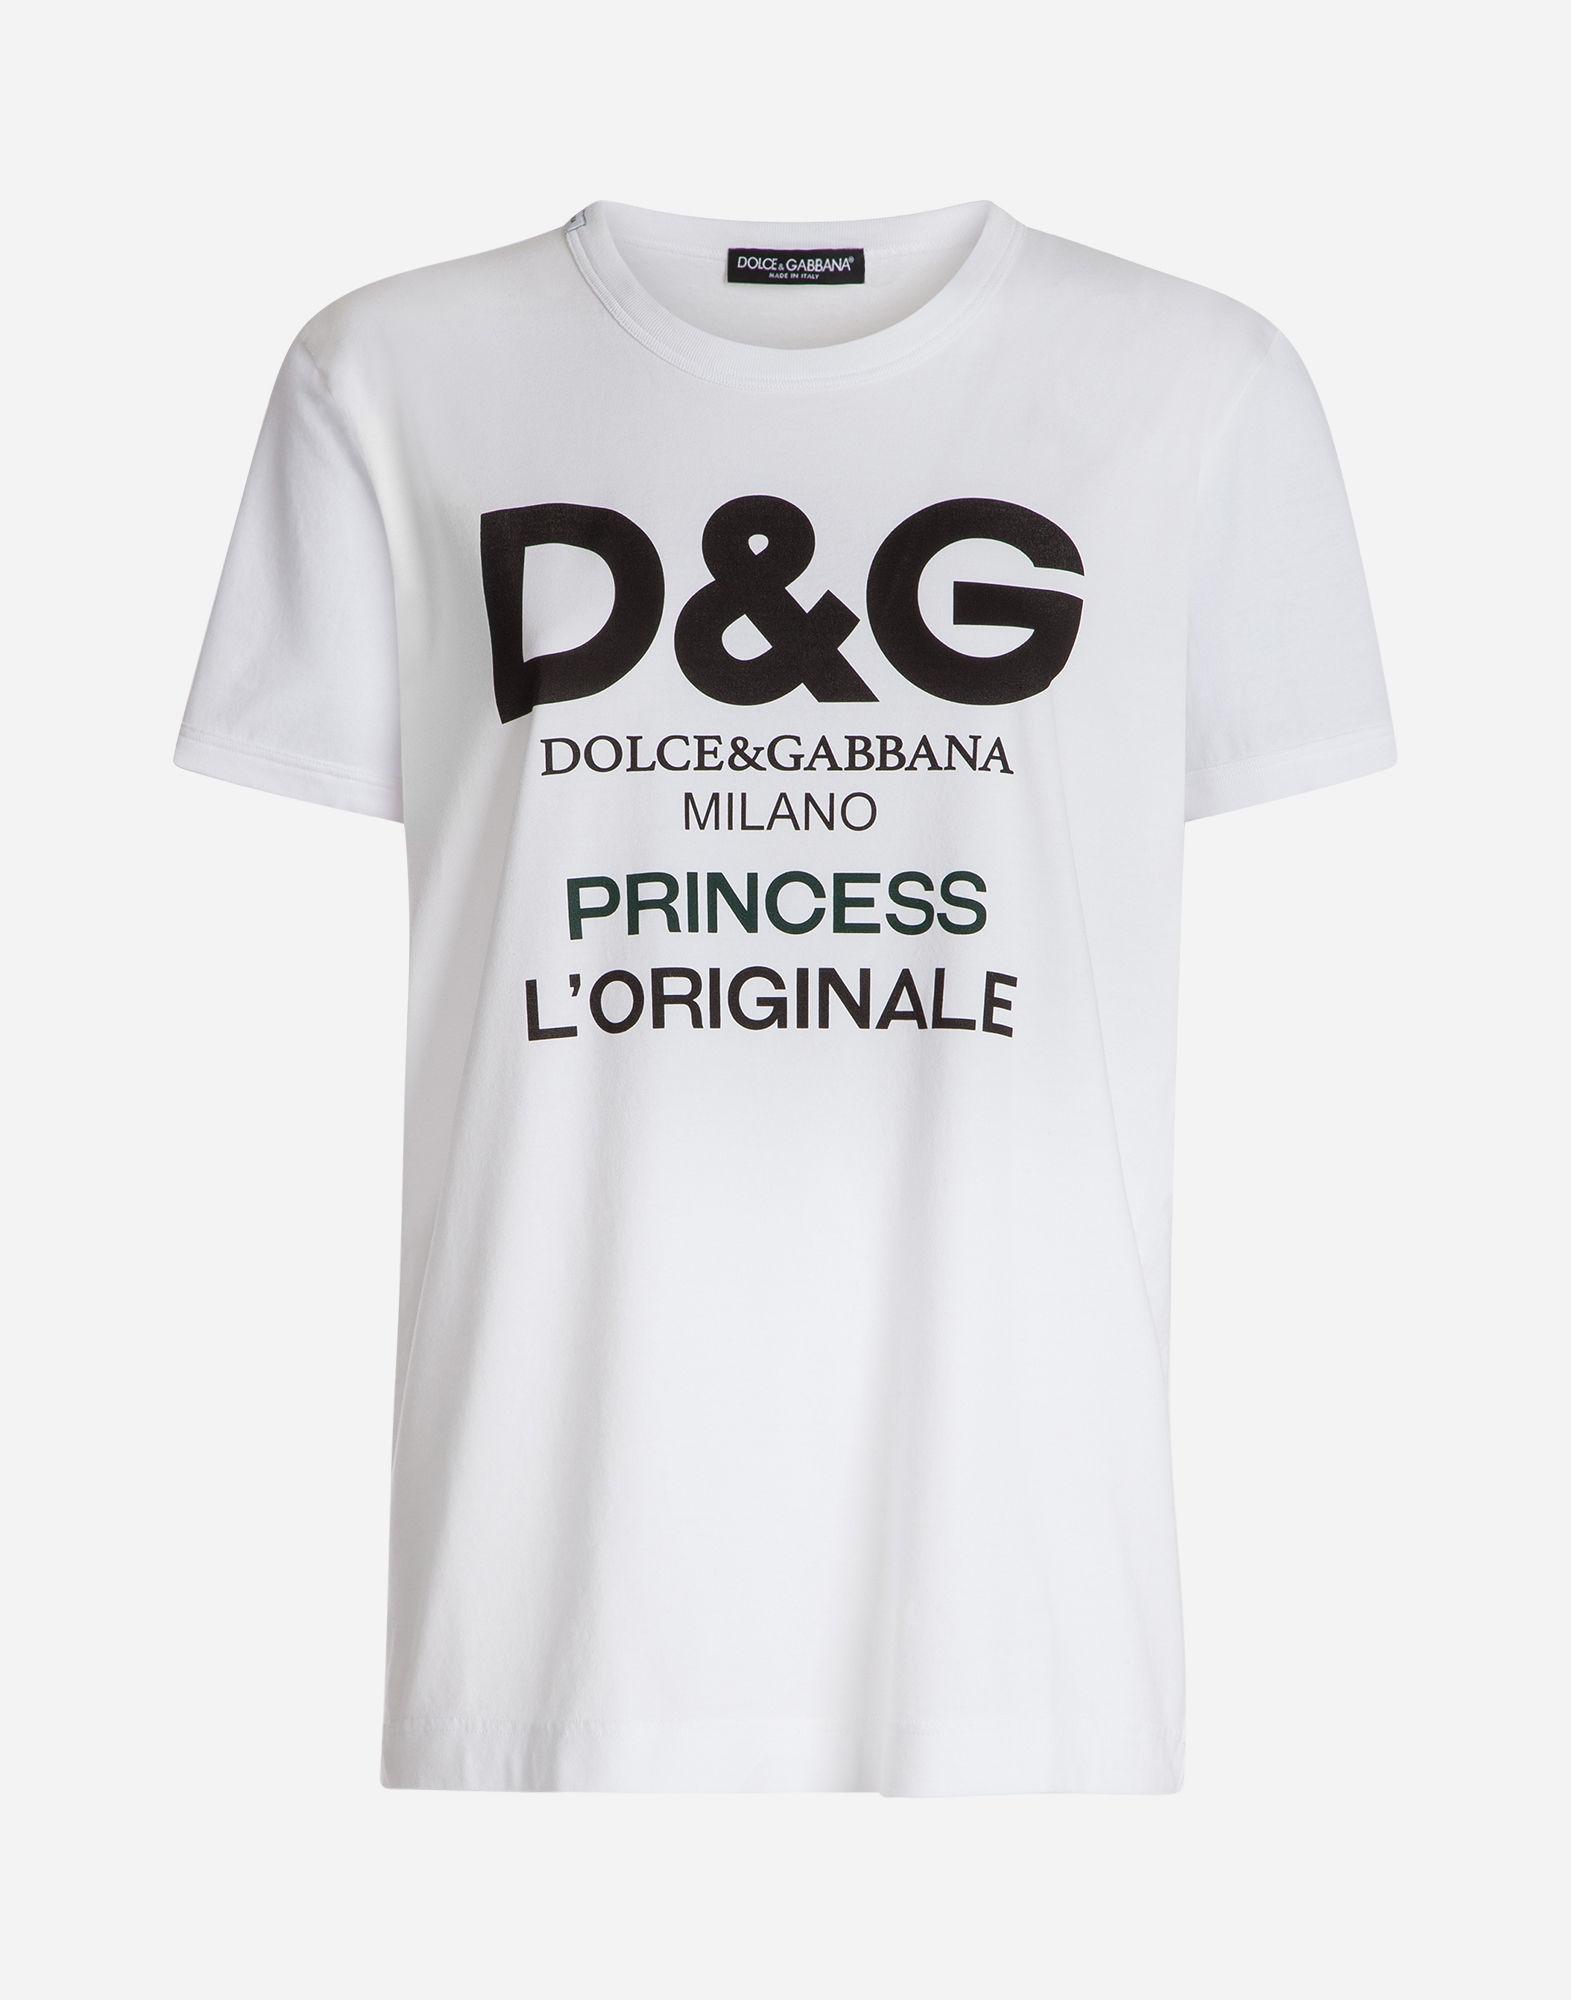 dolce and gabbana shirt price